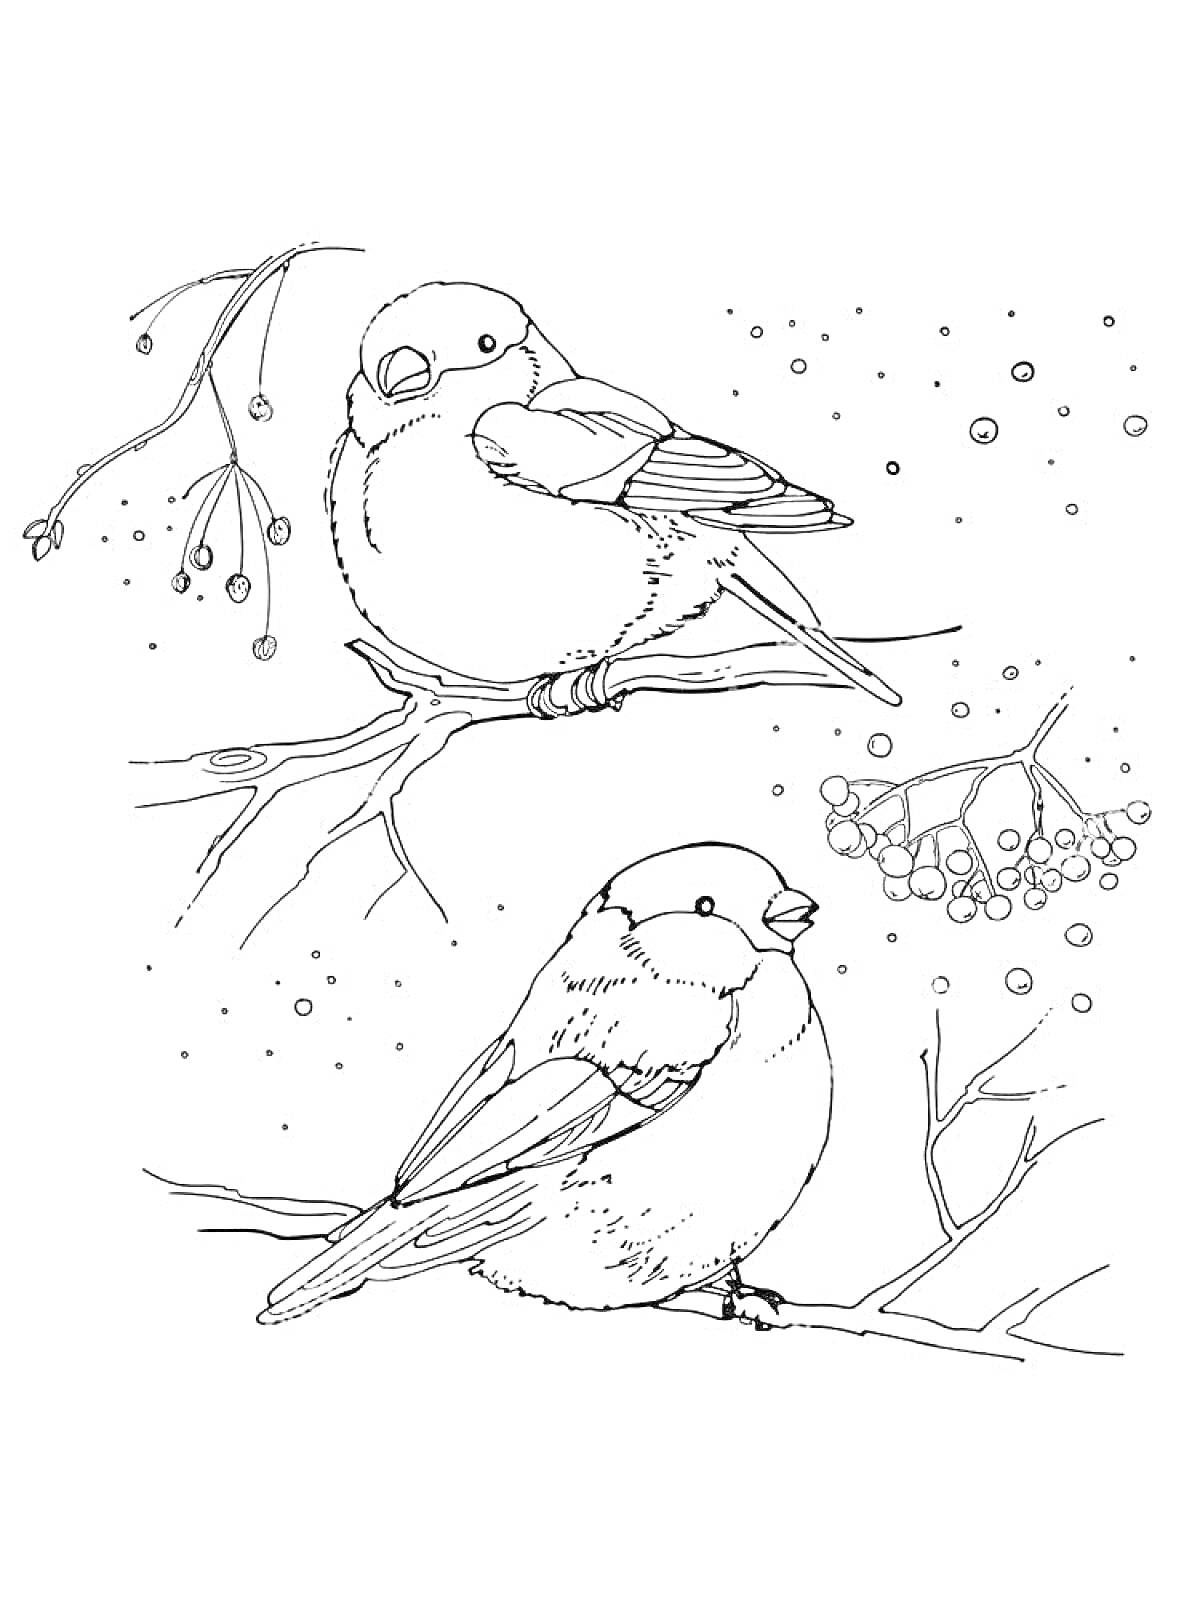 Раскраска Два снегиря на ветке рябины зимой, немного ягод рябины над ними, снежные хлопья вокруг